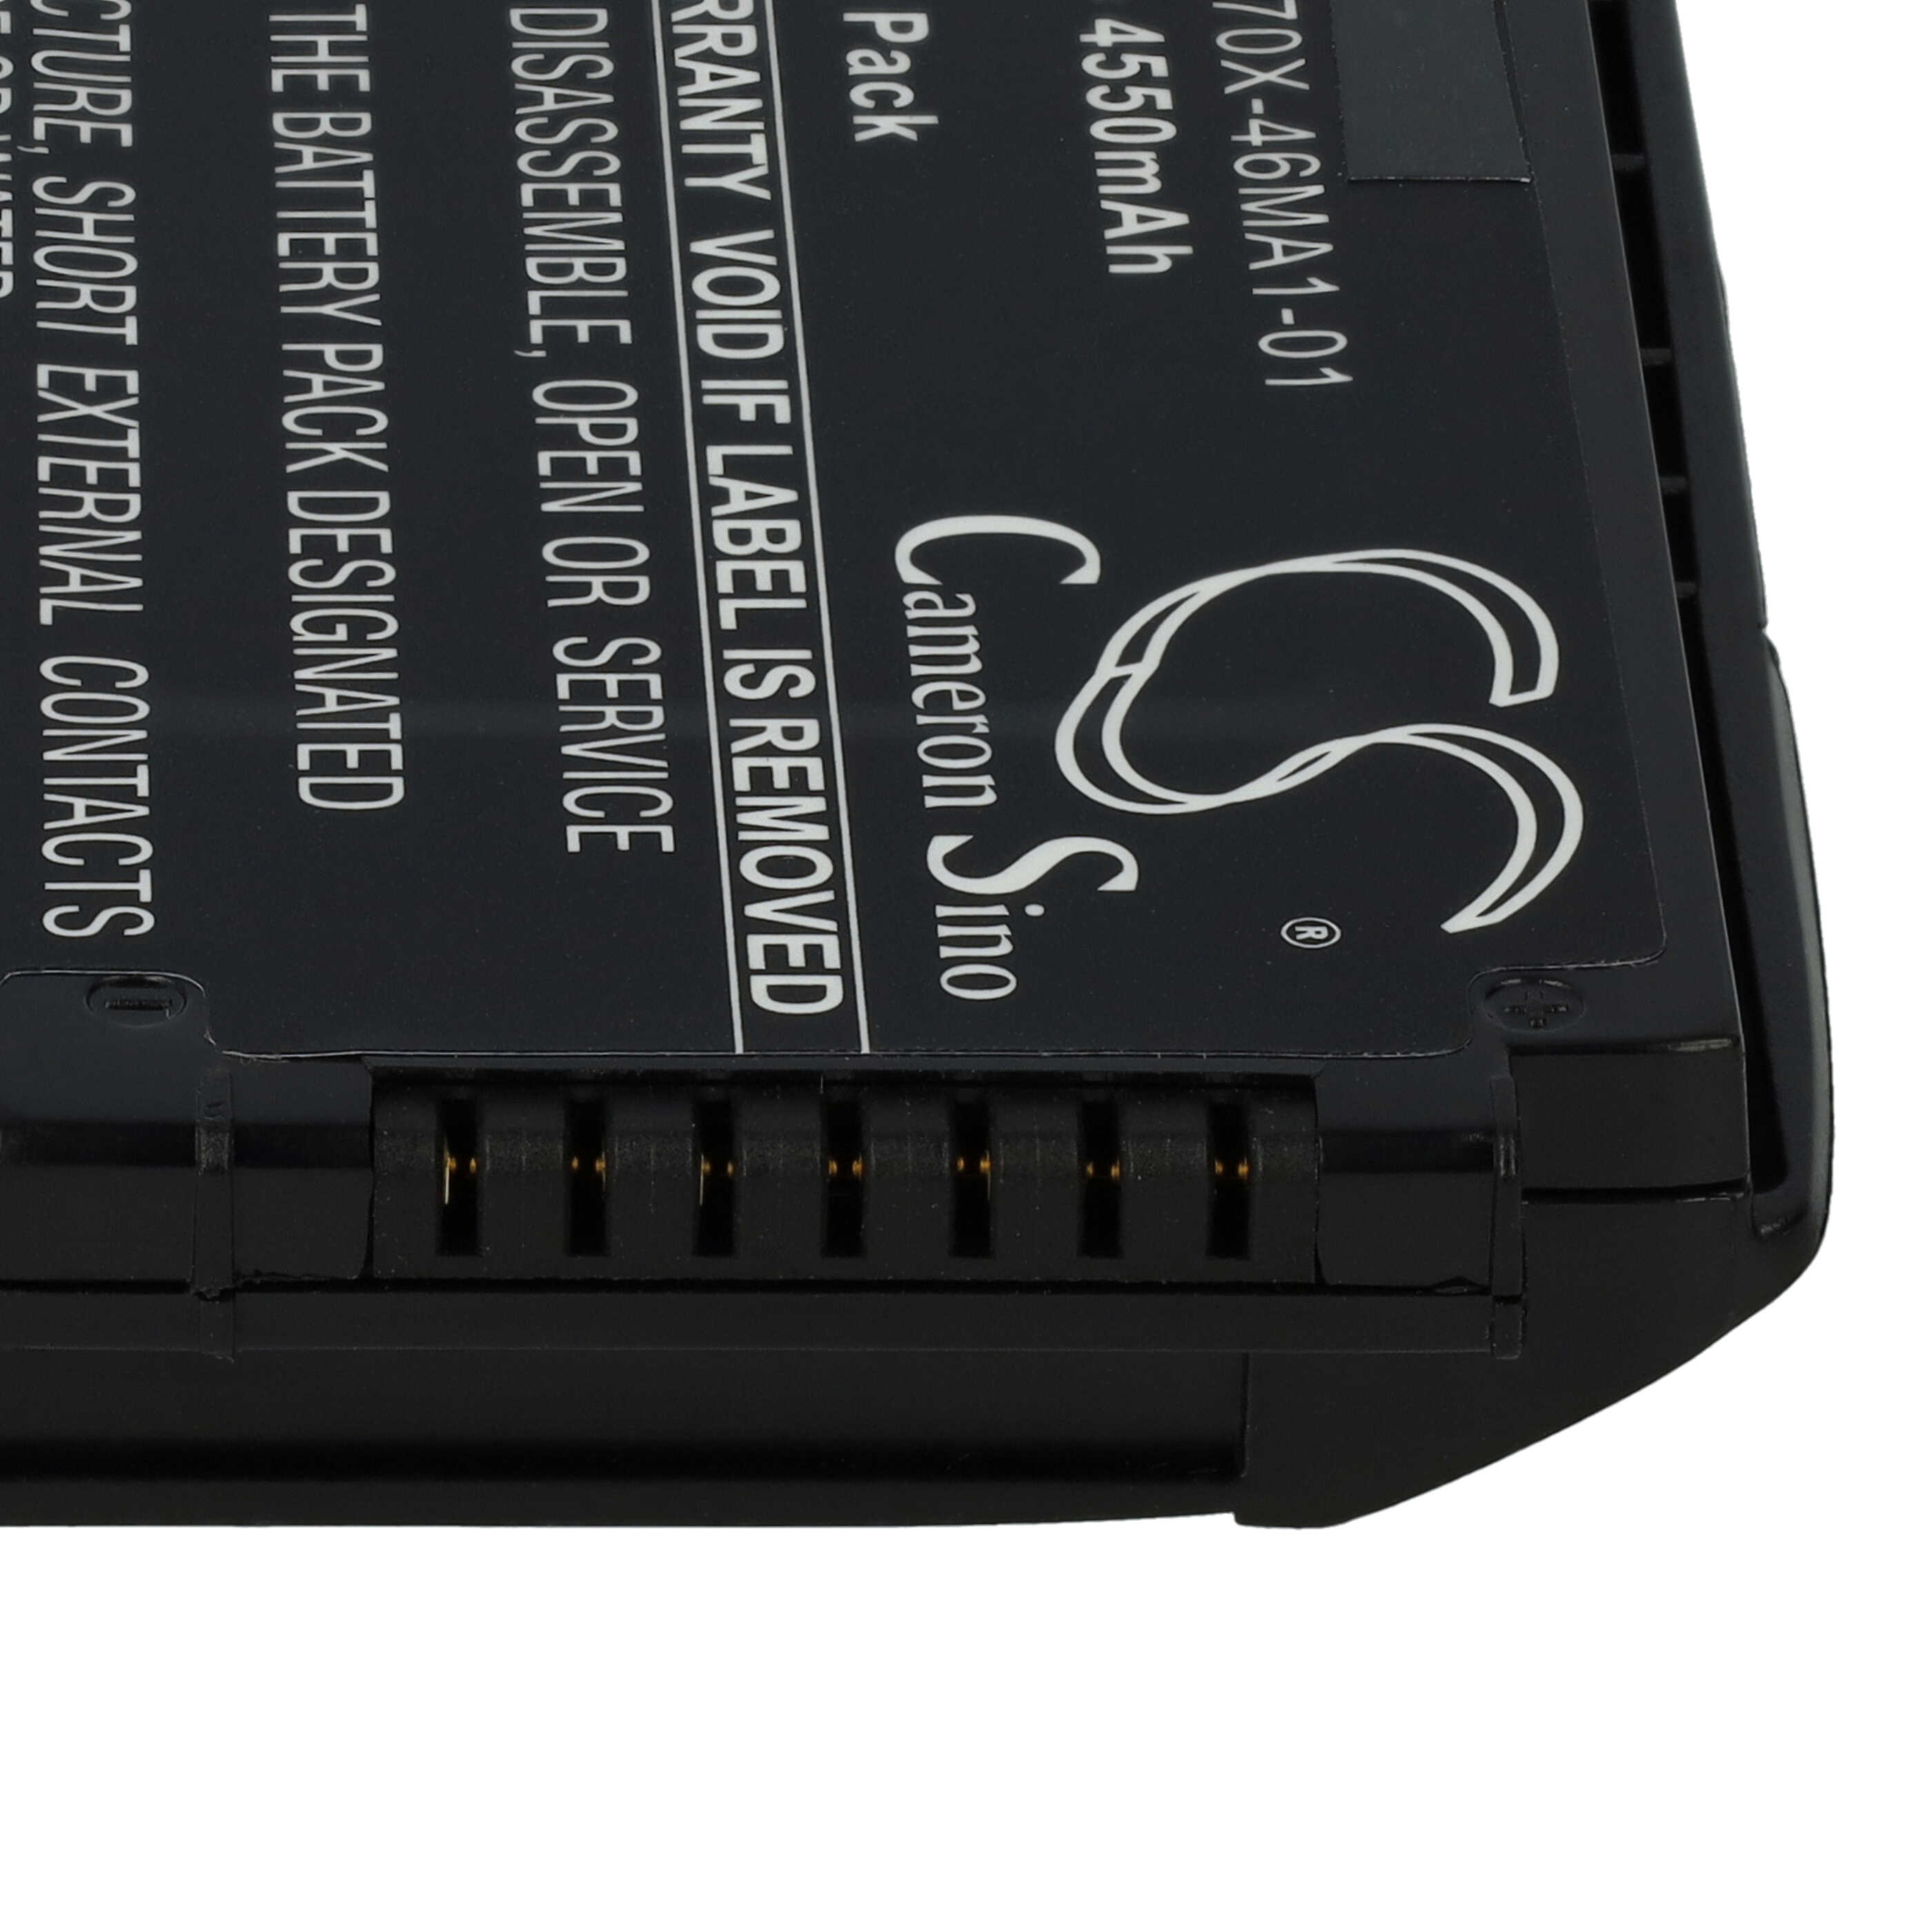 Batería reemplaza Motorola 82-171249-01, 82-171249-02 para escáner de código de barras - 4550 mAh 3,7 V Li-Ion